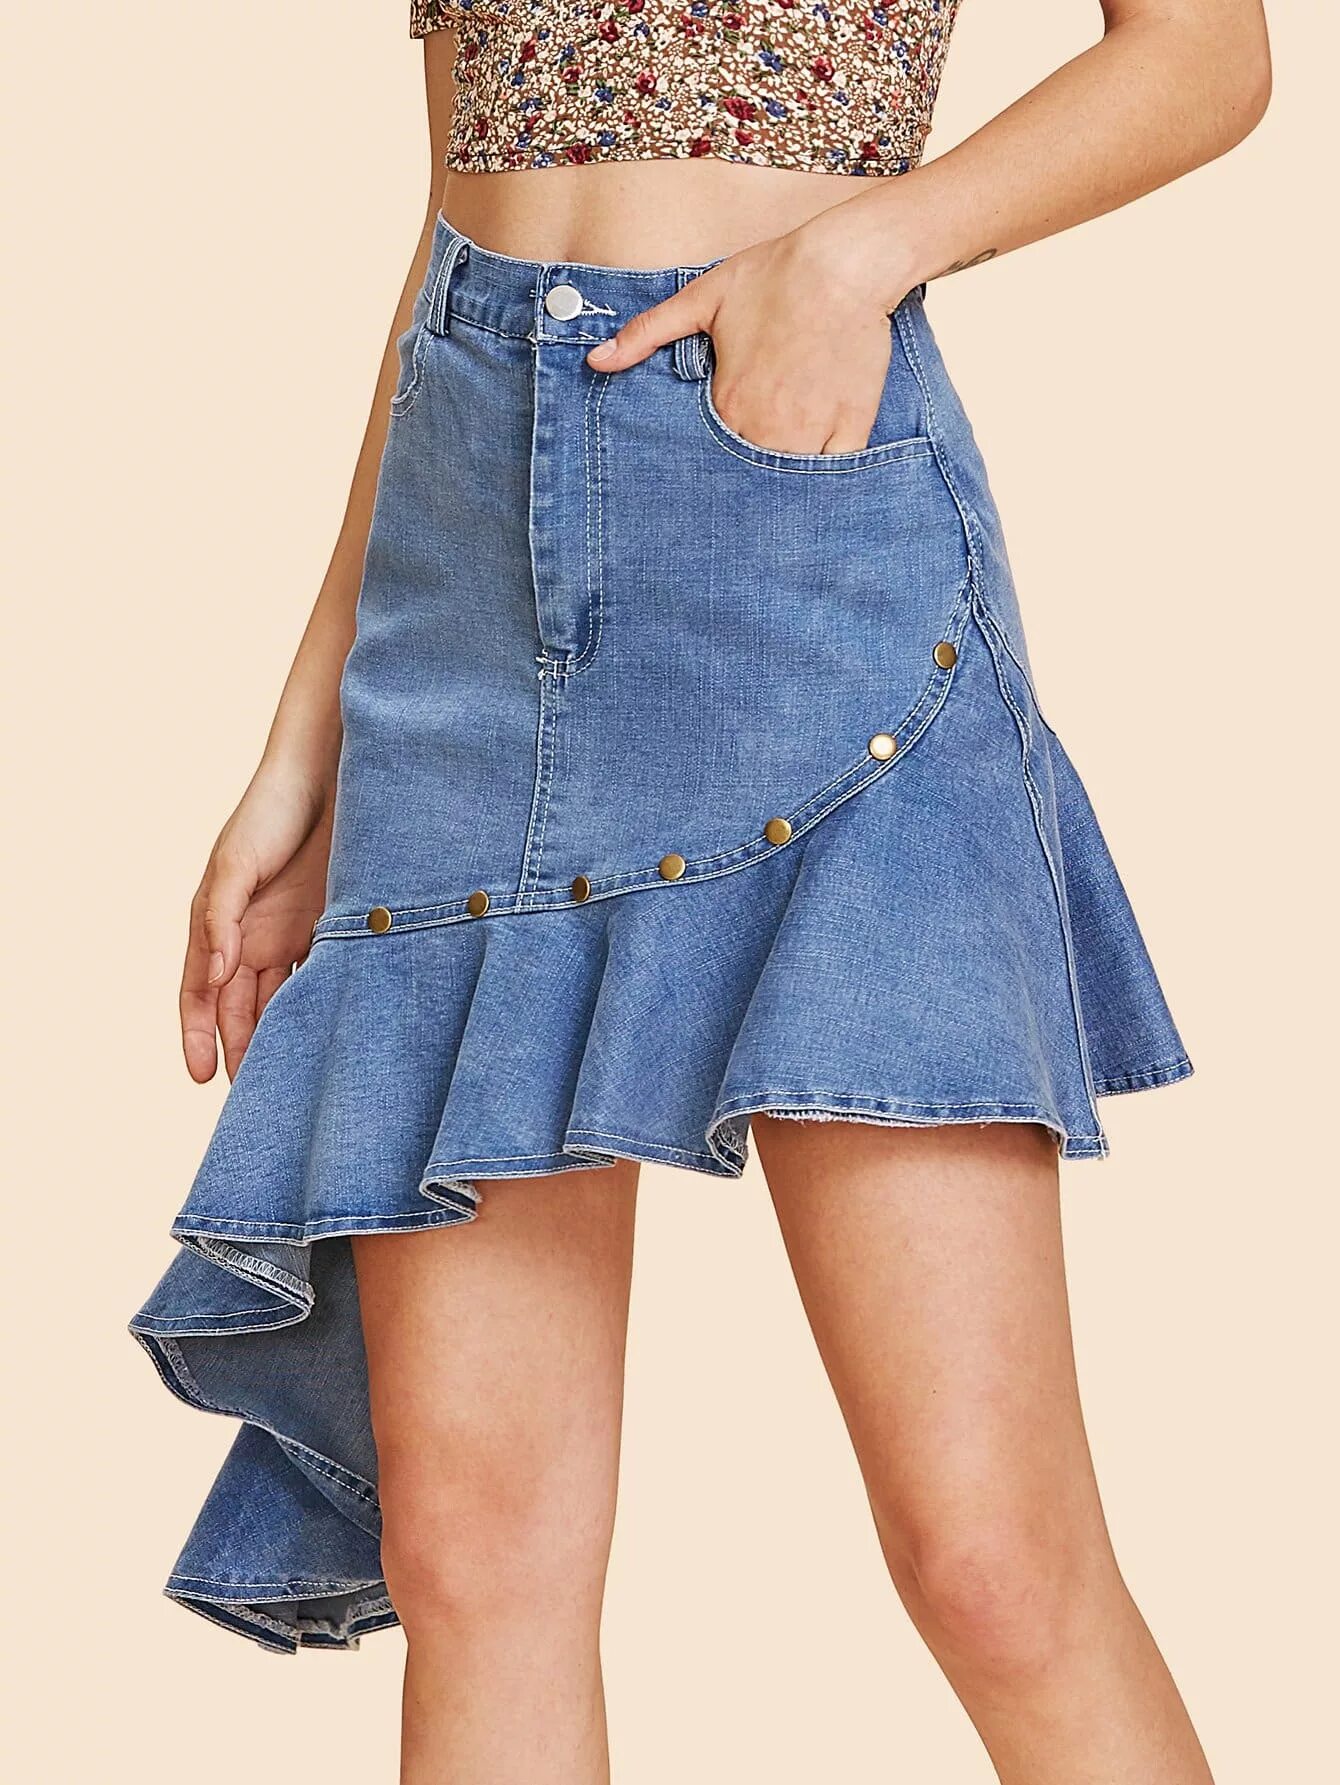 Юбка джинсовая 2022 SHEIN. Джинсовая юбка с воланами. Юбки из джинса. Комбинированная джинсовая юбка. Джинсовая одежда юбка